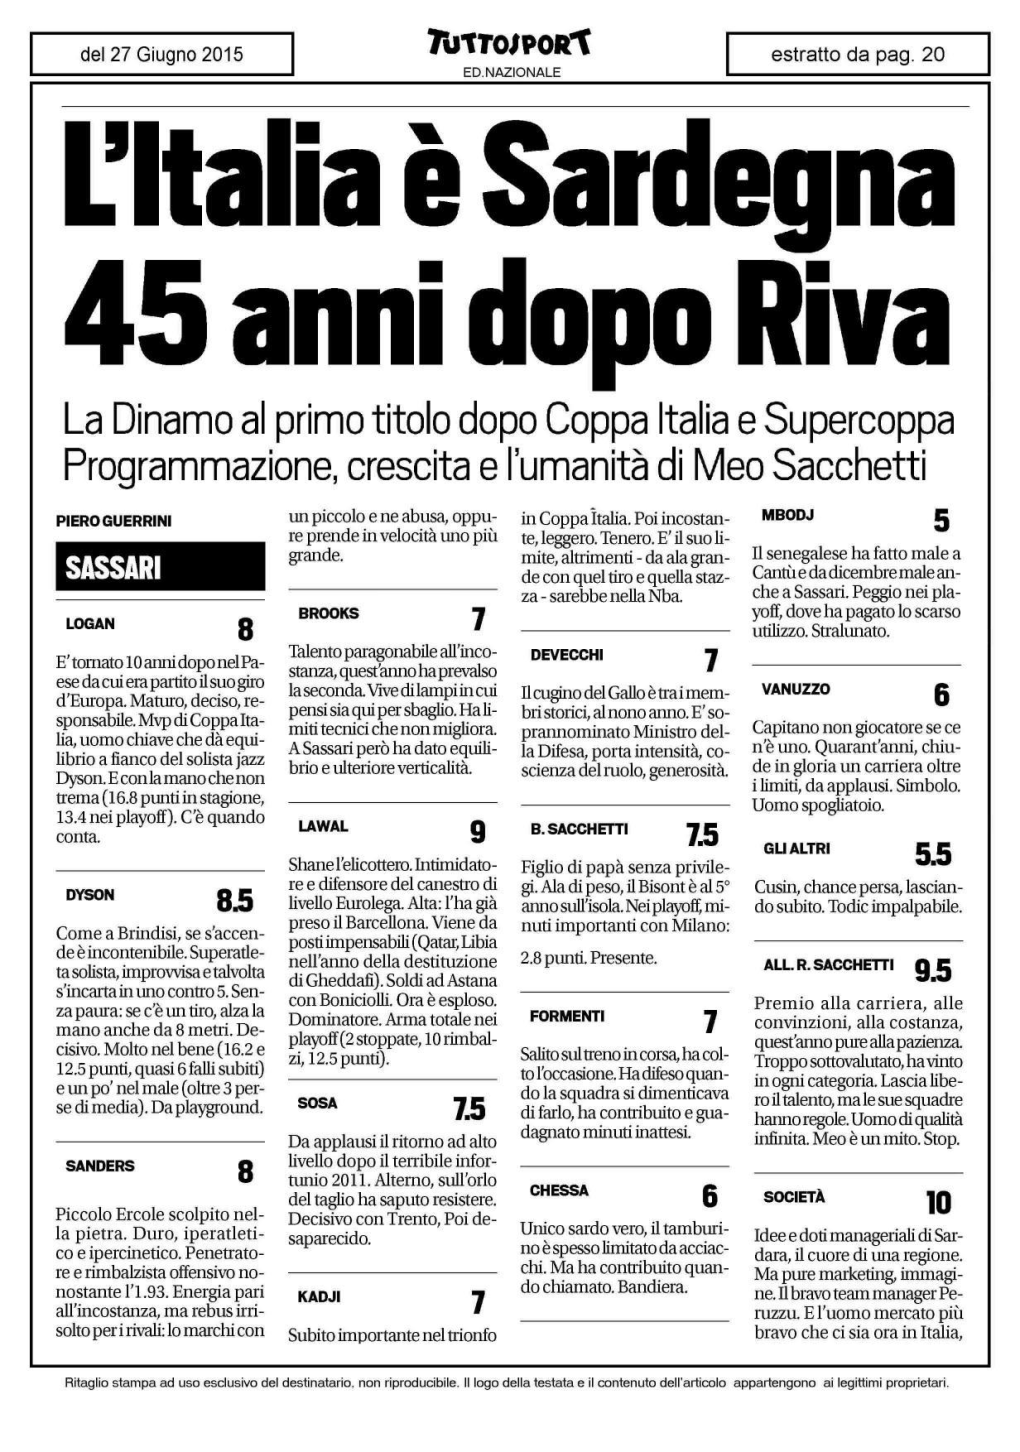 La Dinamo Al Primo Titolo Dopo Coppa Italia E Supercoppa Programmazione, Crescita E L'umanità Di Meo Sacchetti